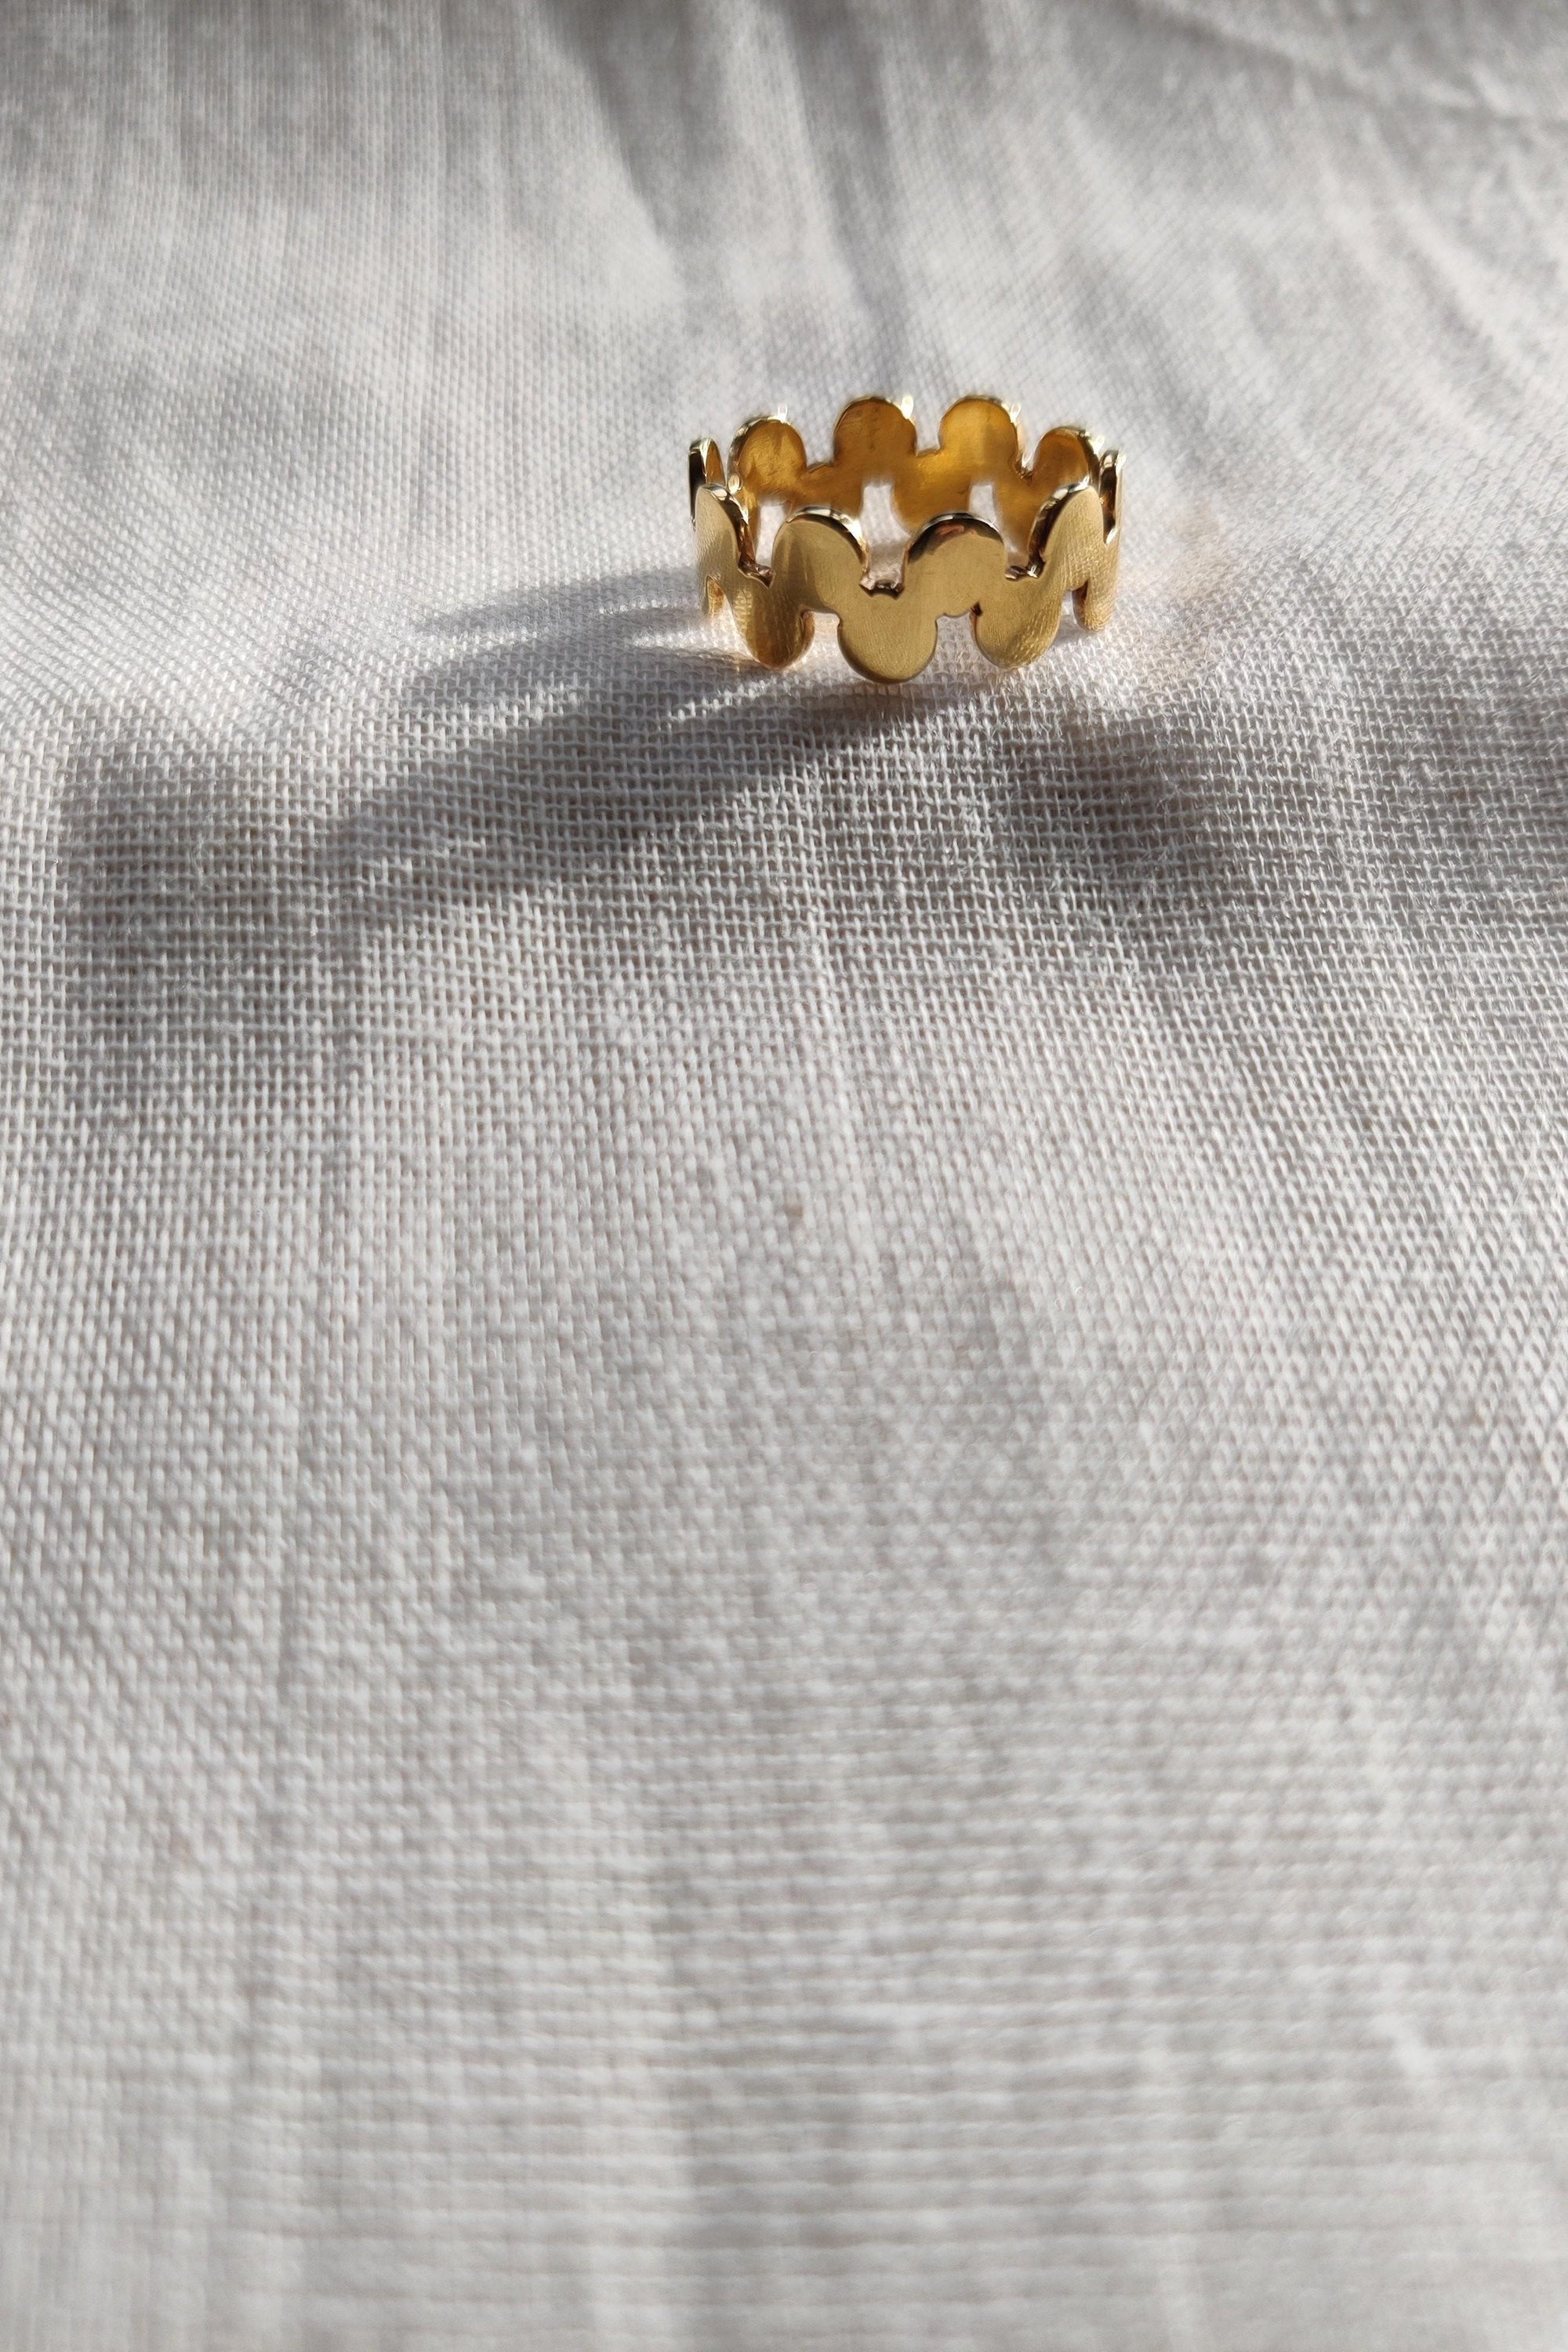 Gold Handmade Ring Effervescence Style-The Diamond Setter